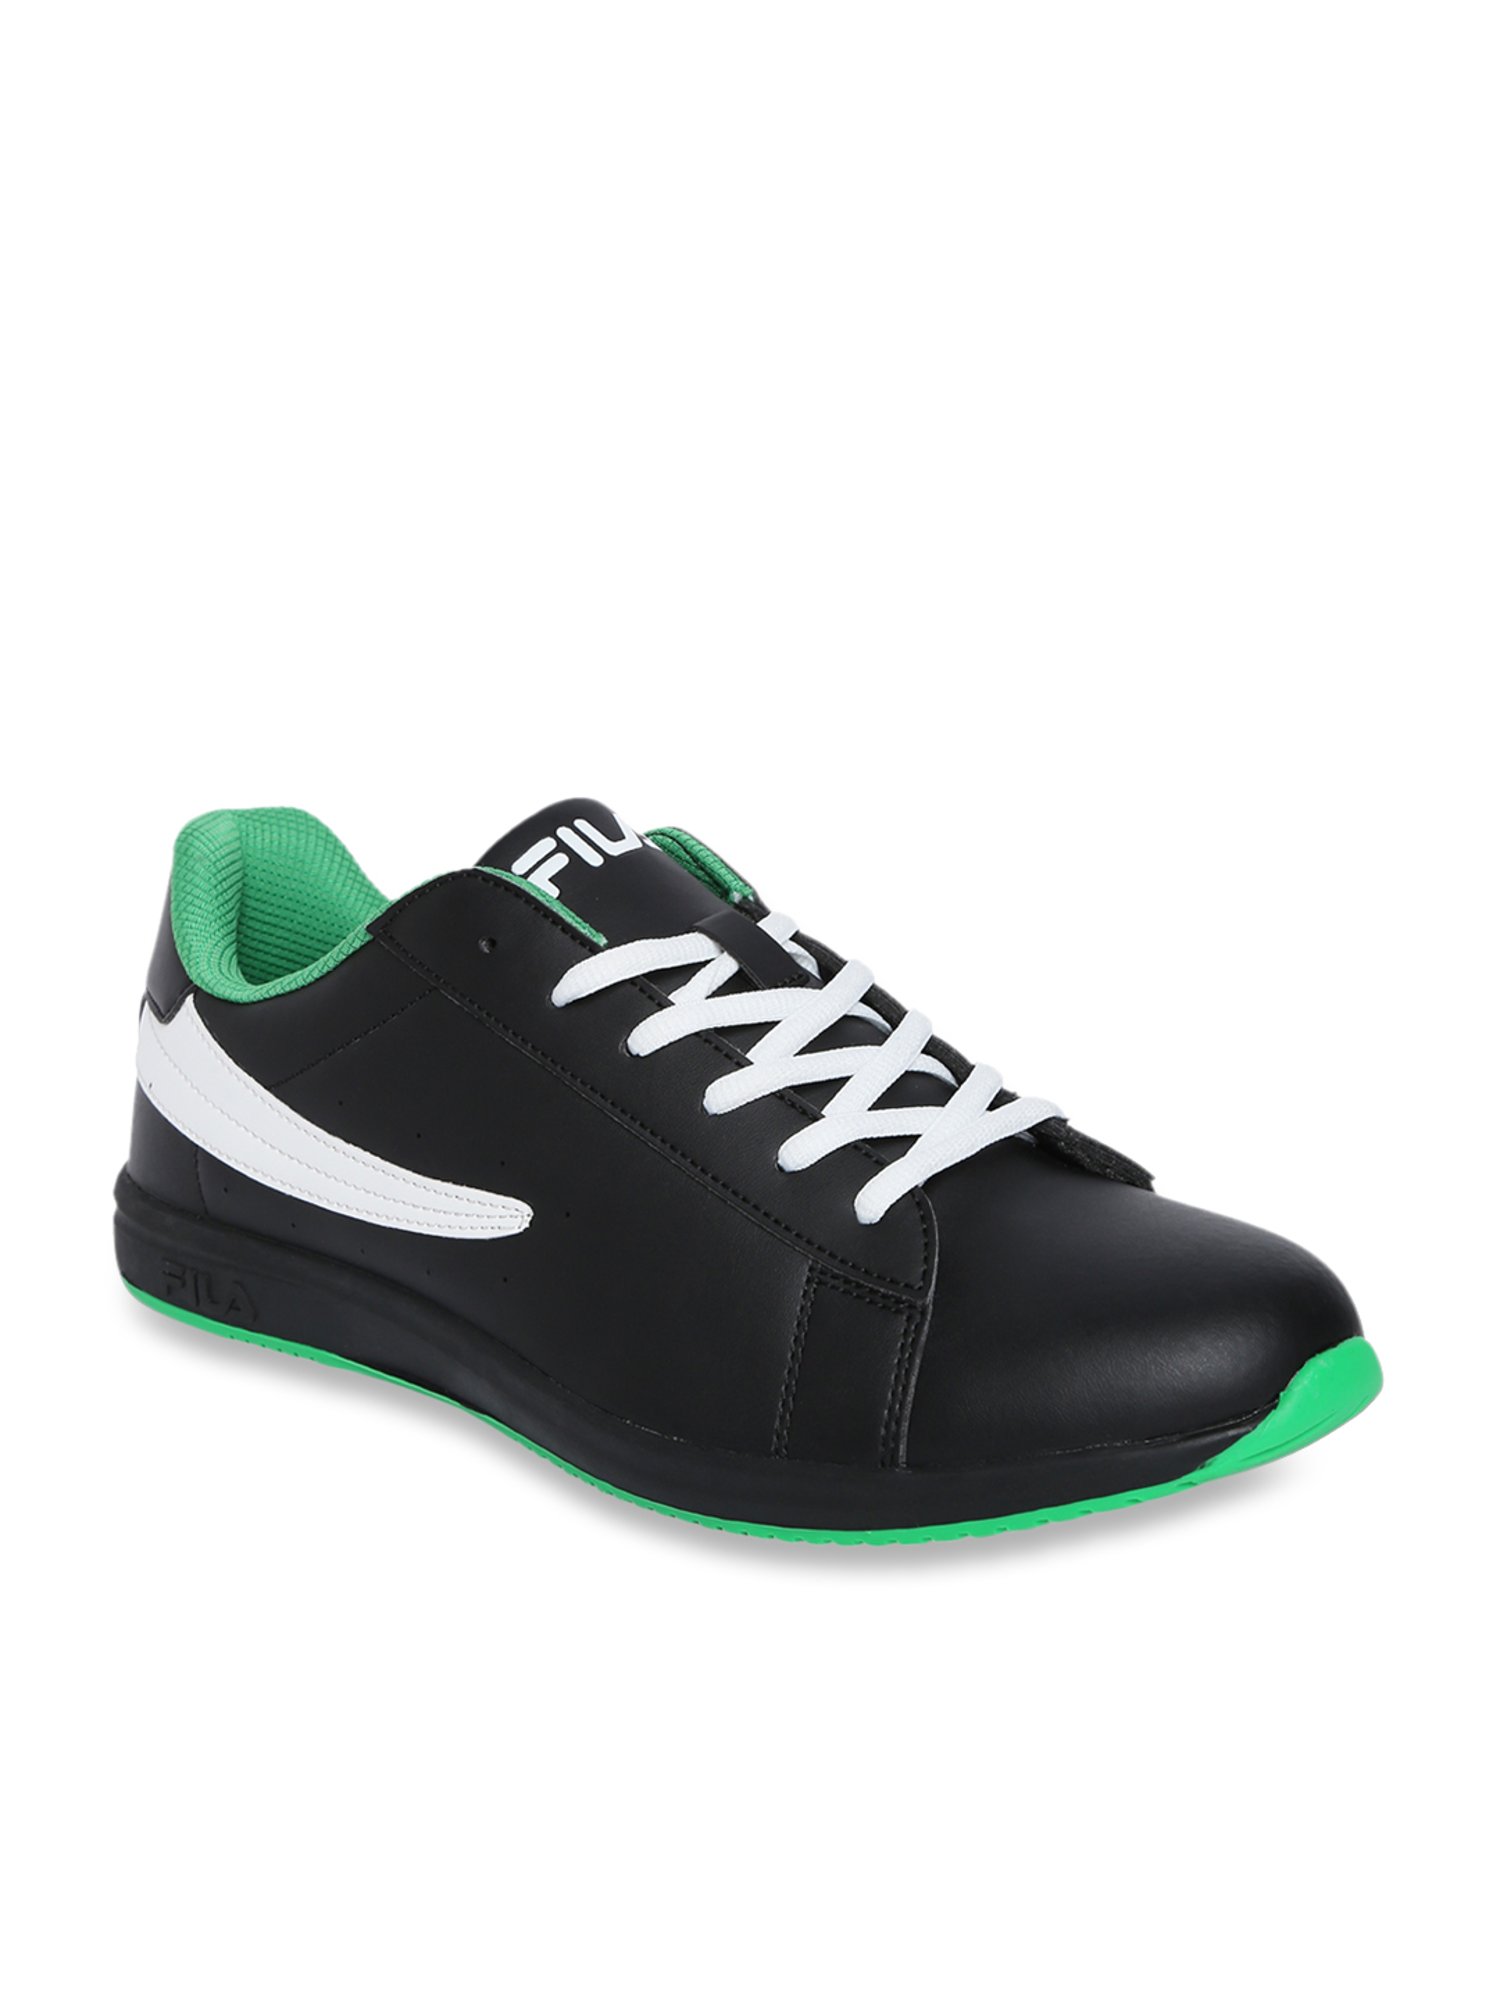 198s tennis shoes